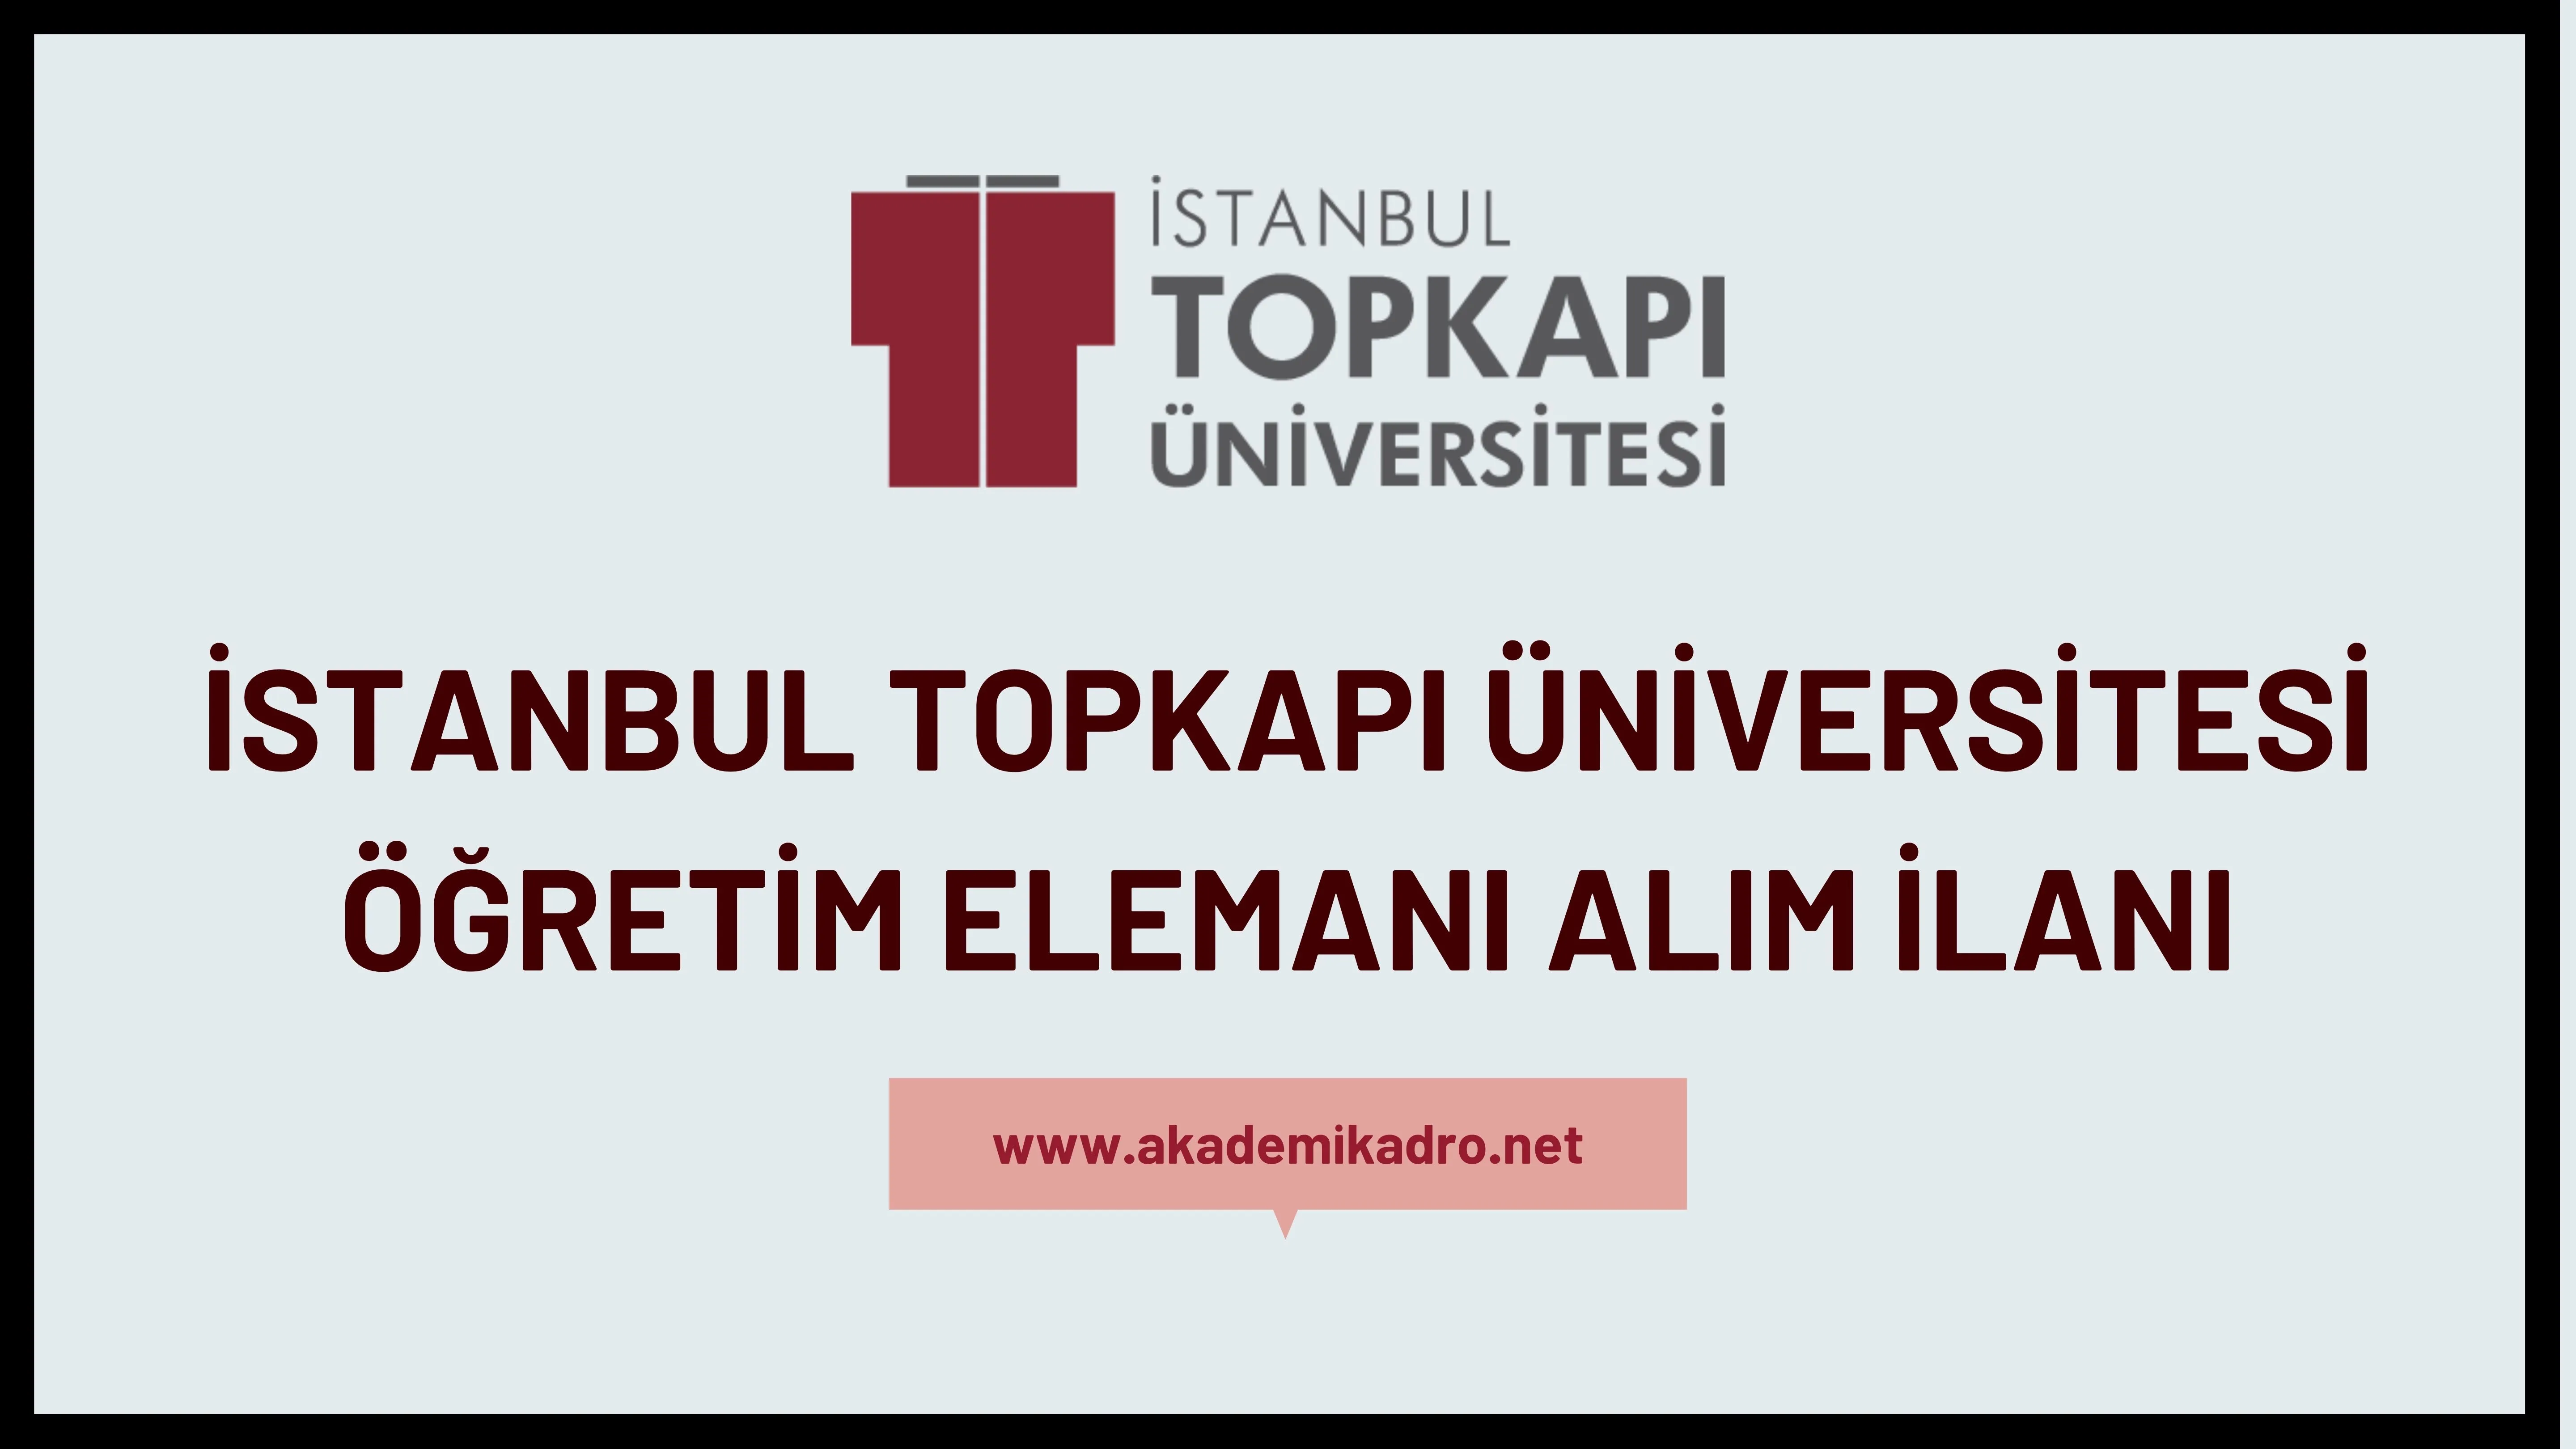 İstanbul Topkapı Üniversitesi 9 Araştırma görevlisi, 8 Öğretim görevlisi ve 26 Öğretim üyesi alacak.